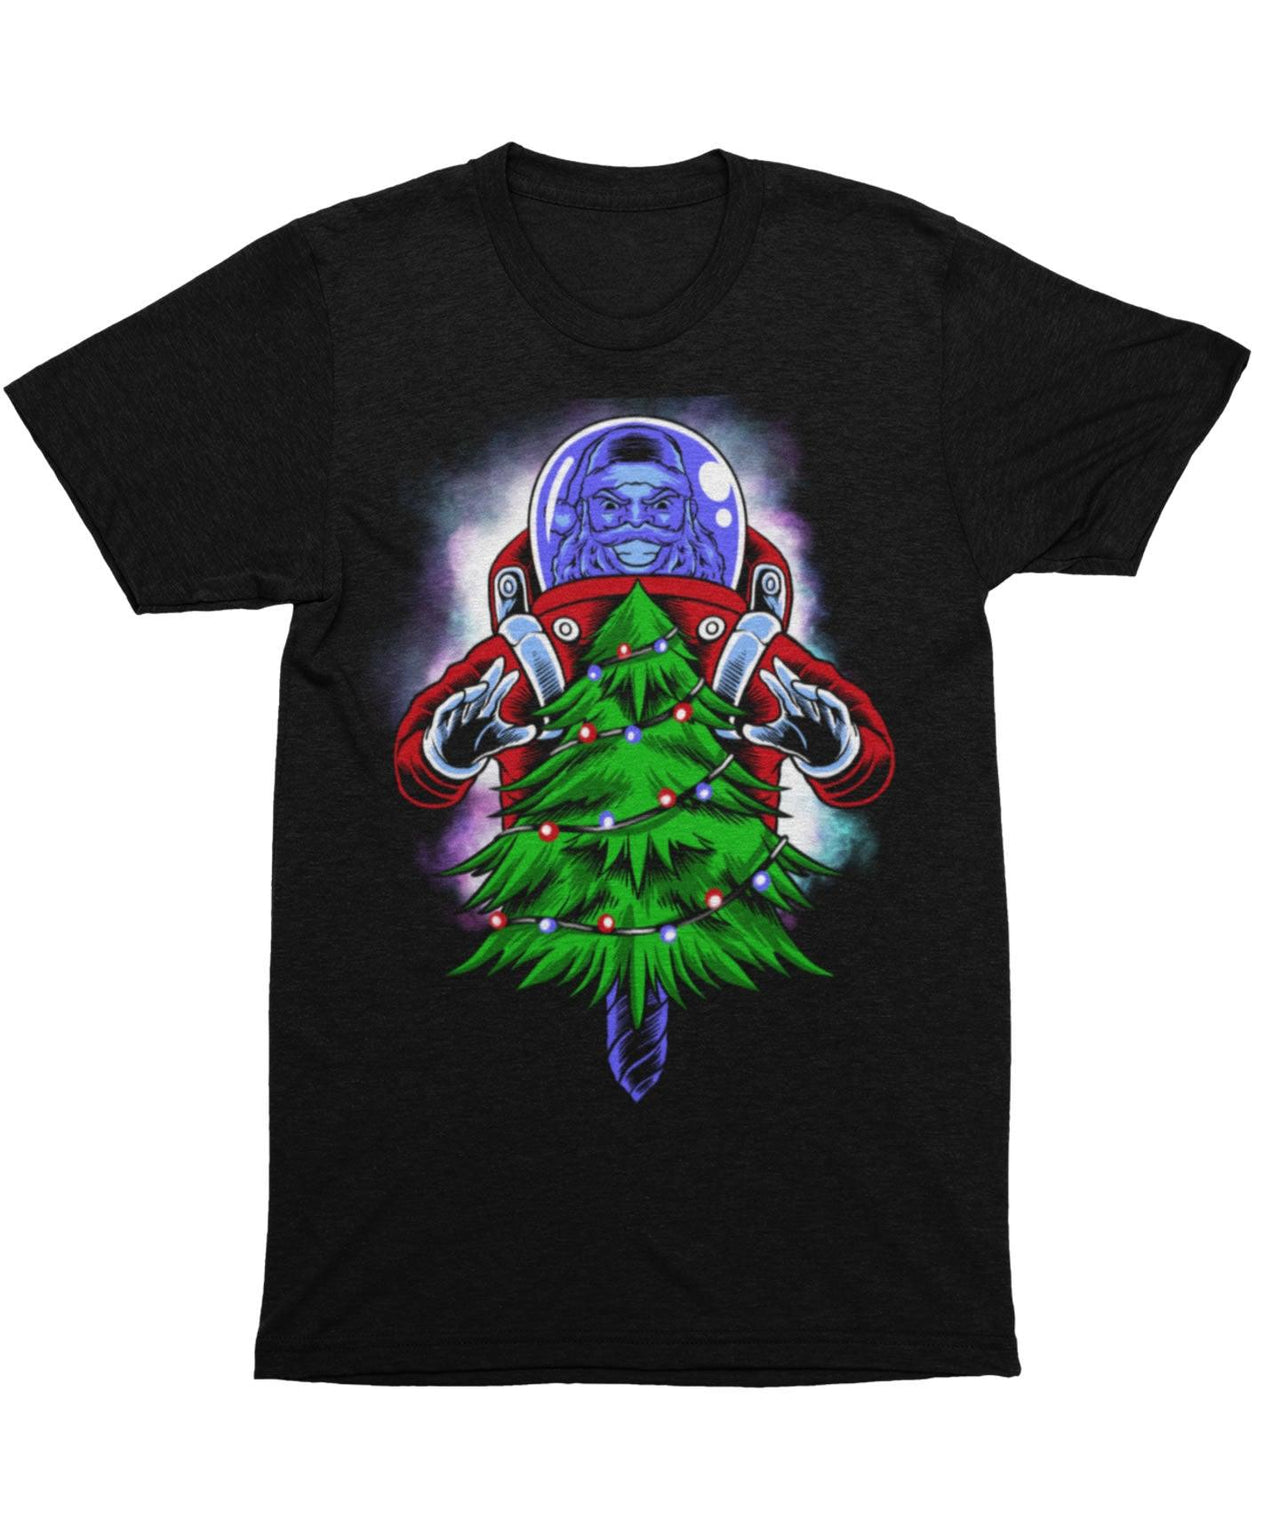 End Of light, Unisex Christmas Graphic T-Shirt For Men 8Ball